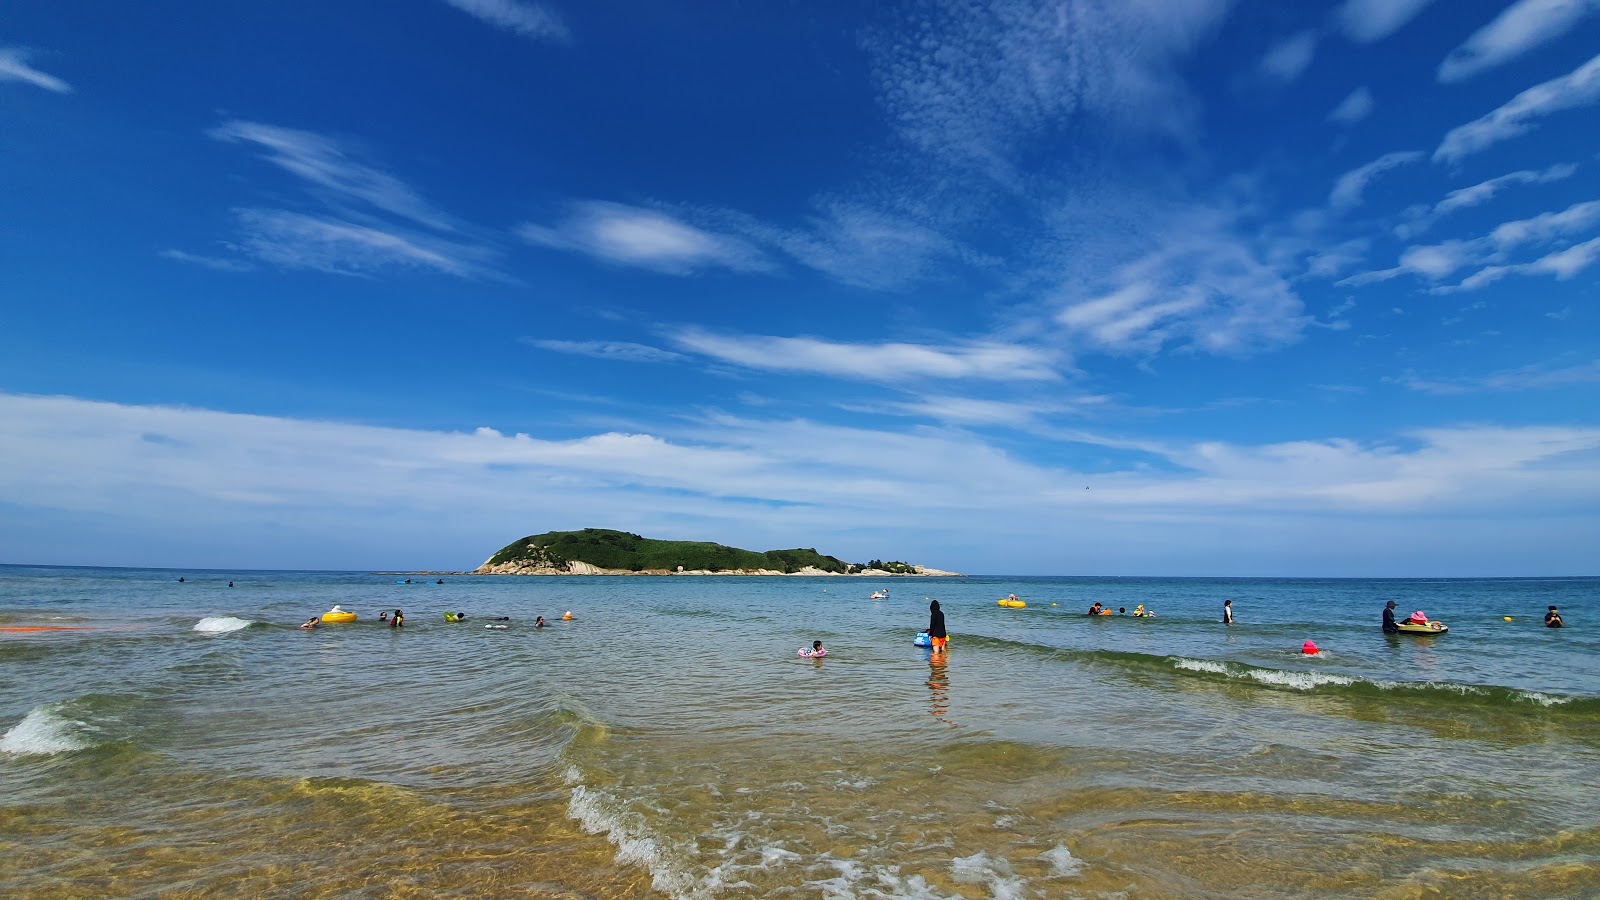 Songjiho Beach'in fotoğrafı imkanlar alanı